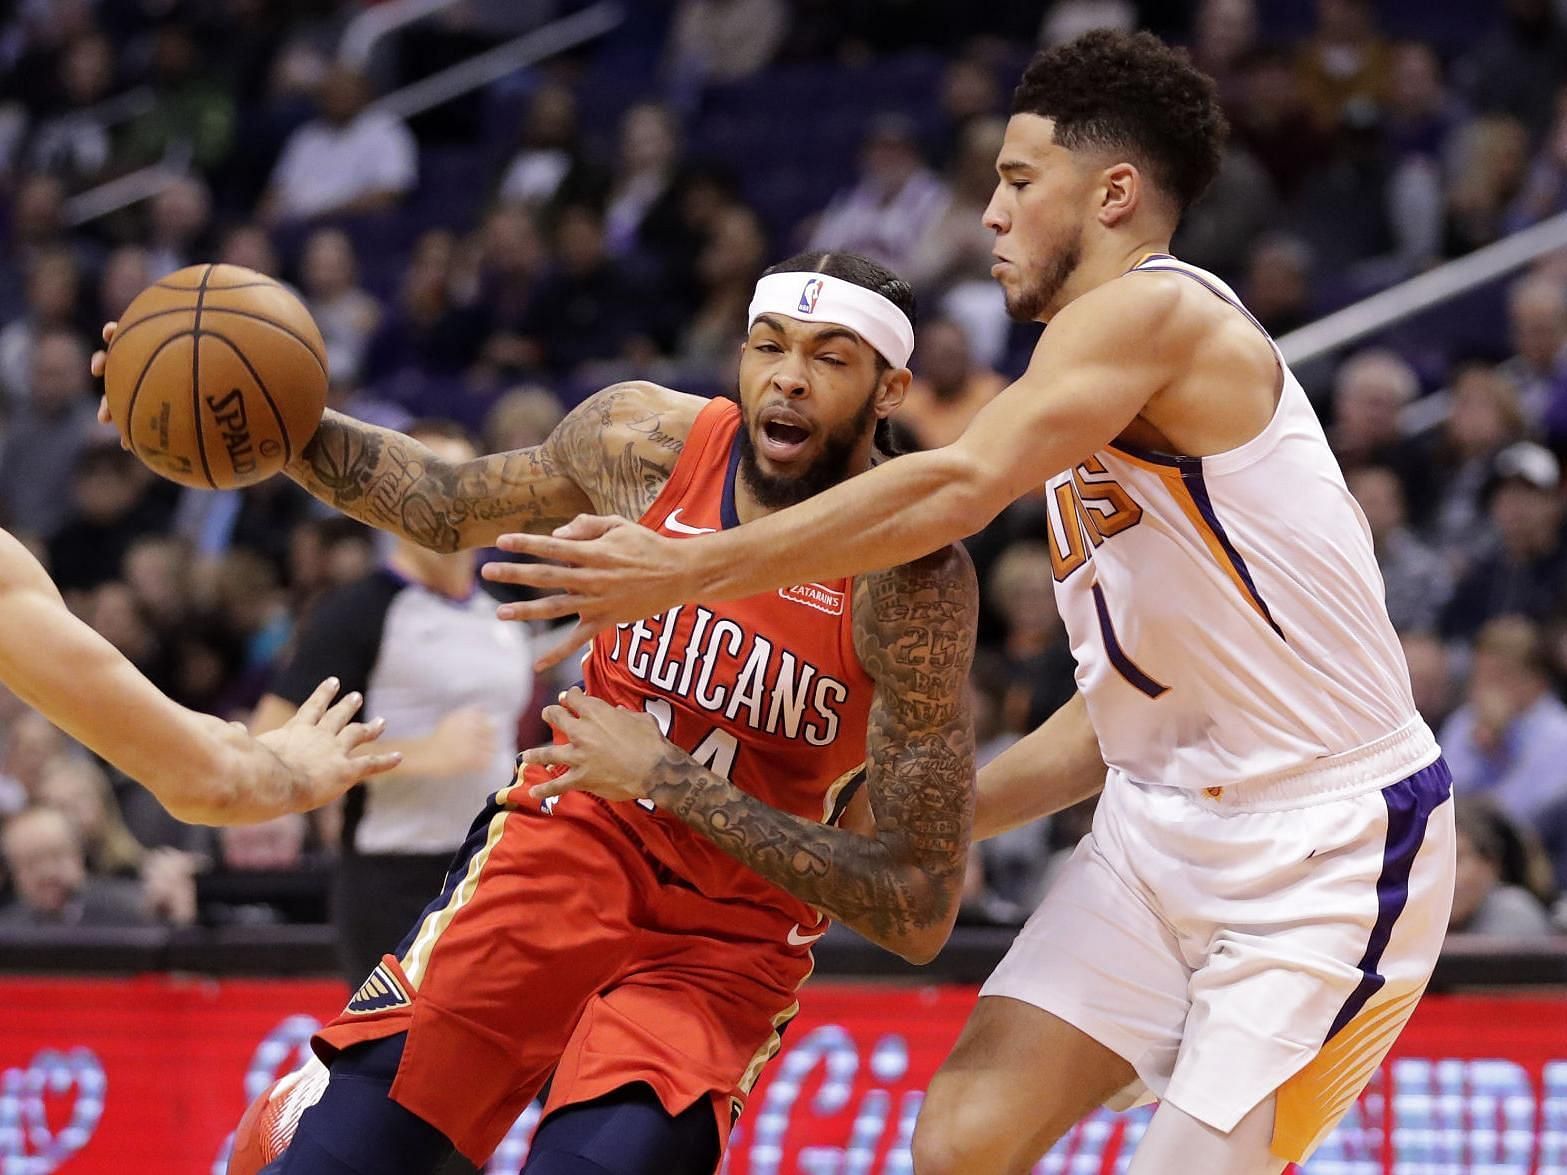 New Orleans Pelicans vs Phoenix Suns